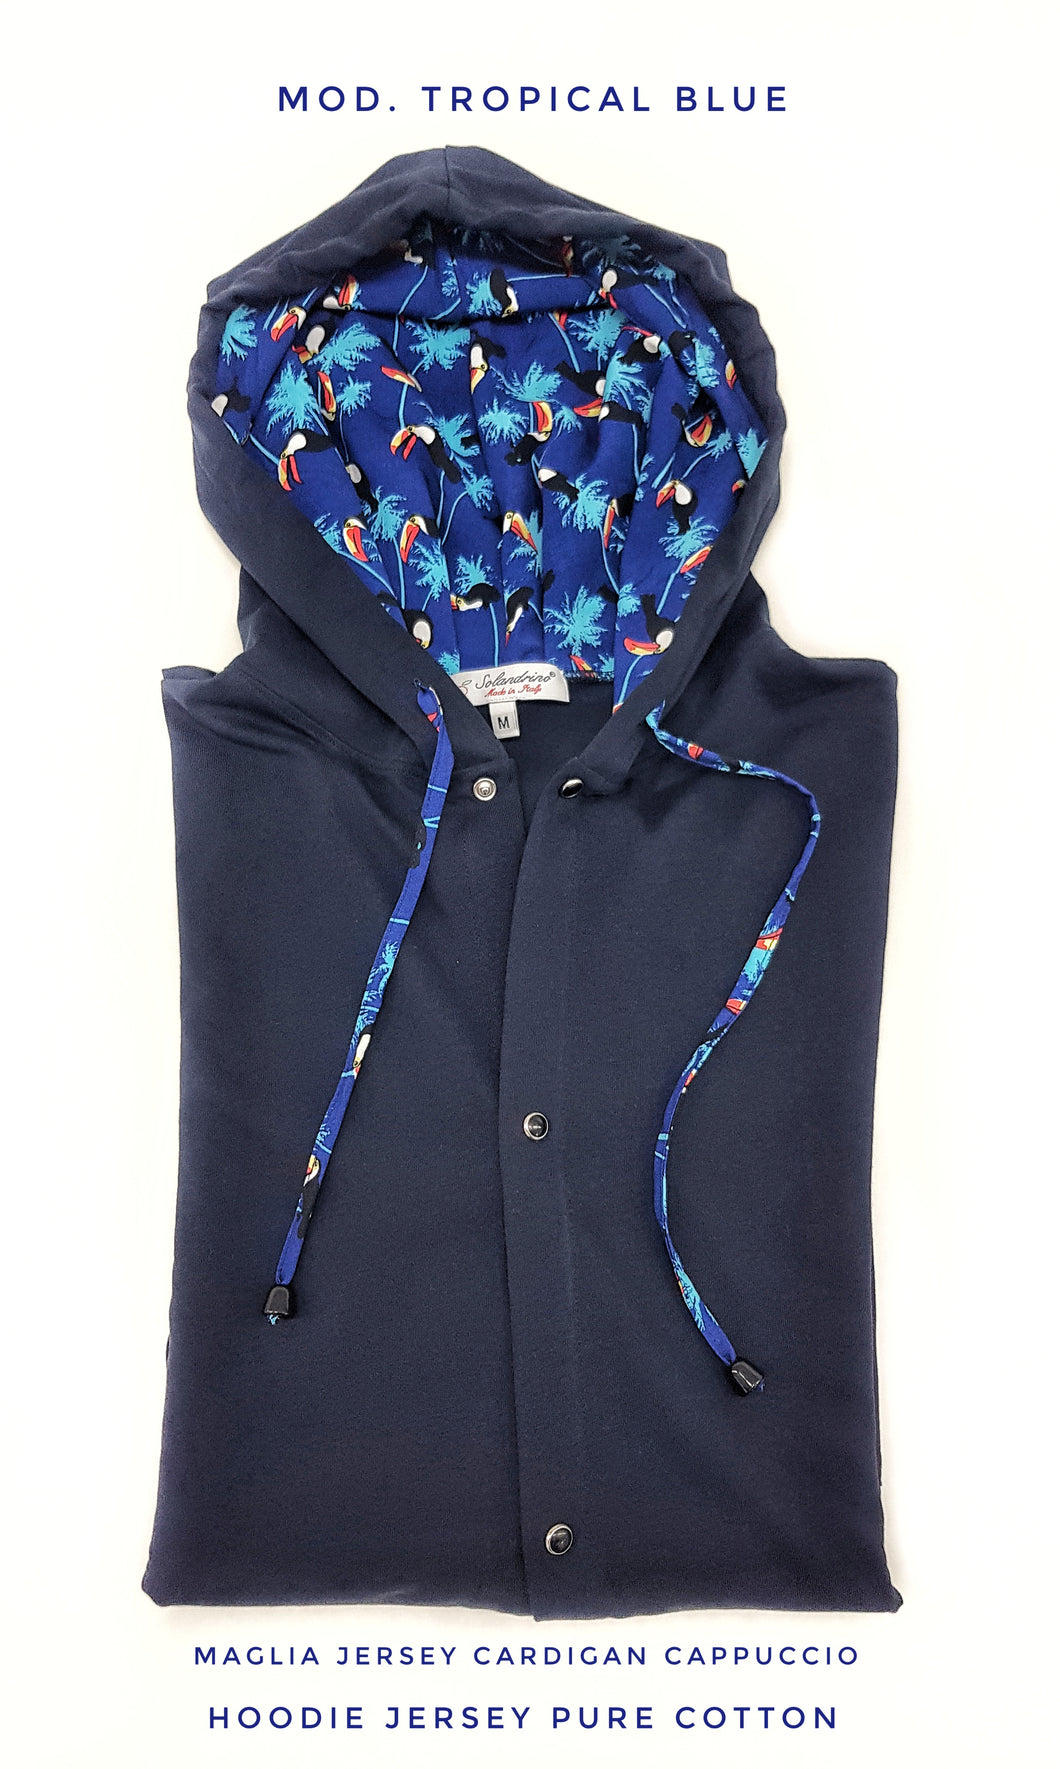 Maglia cardigan jersey blu con Cappuccio Design tucano made in Italy Fantasia  100% cotone - Sweatshirt hoodie